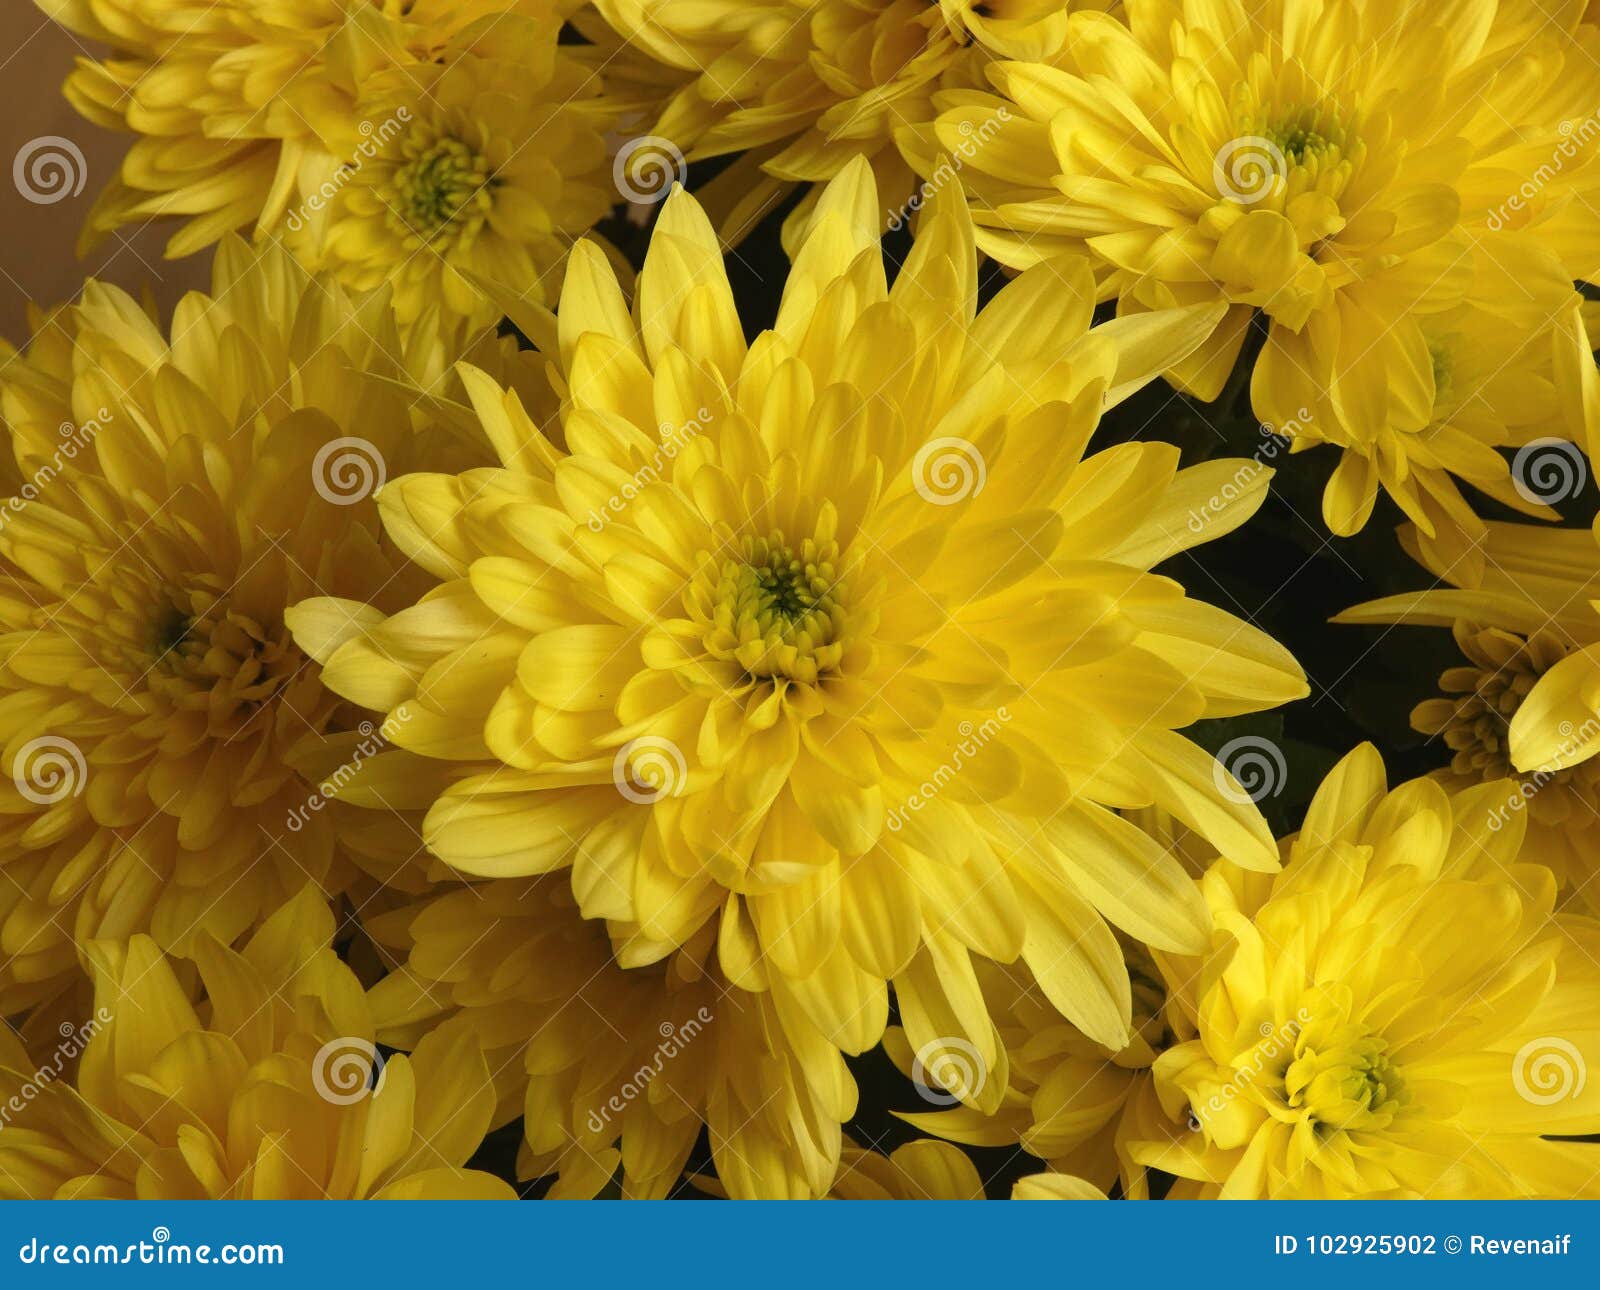 chrysanthemum yellow flowers